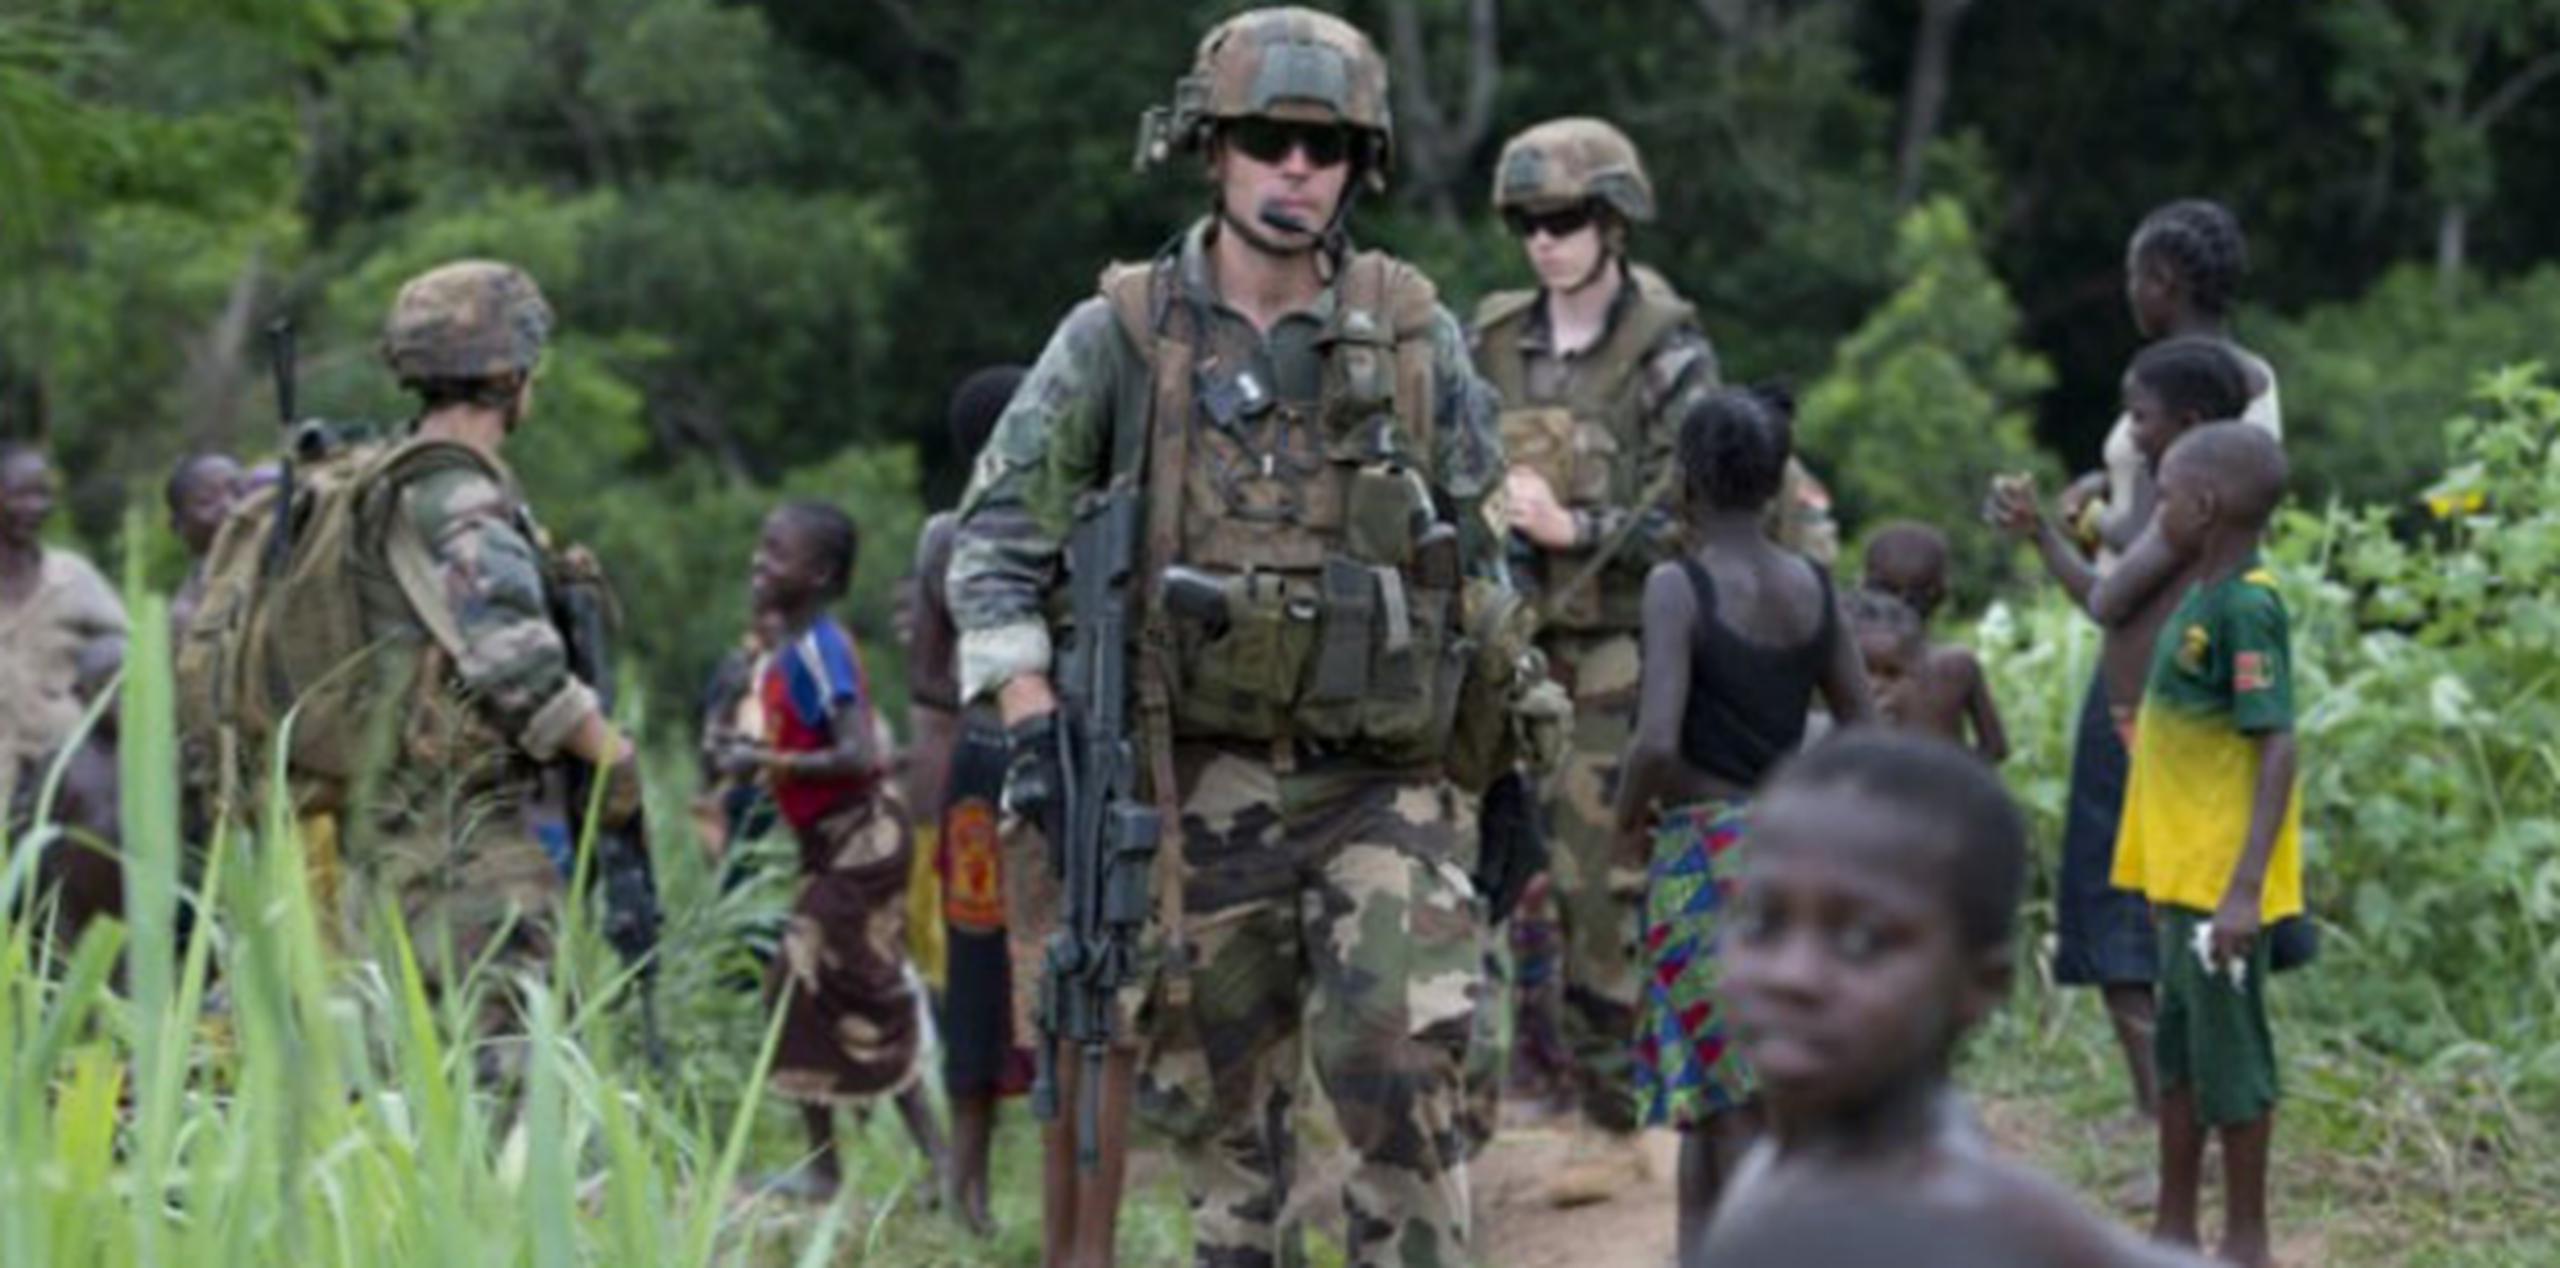 Las 10,000 tropas de la ONU y 1,800 policías apoyarán a más de 5,000 soldados de la Unión Africana, pero hasta el 15 de septiembre. (AFP)